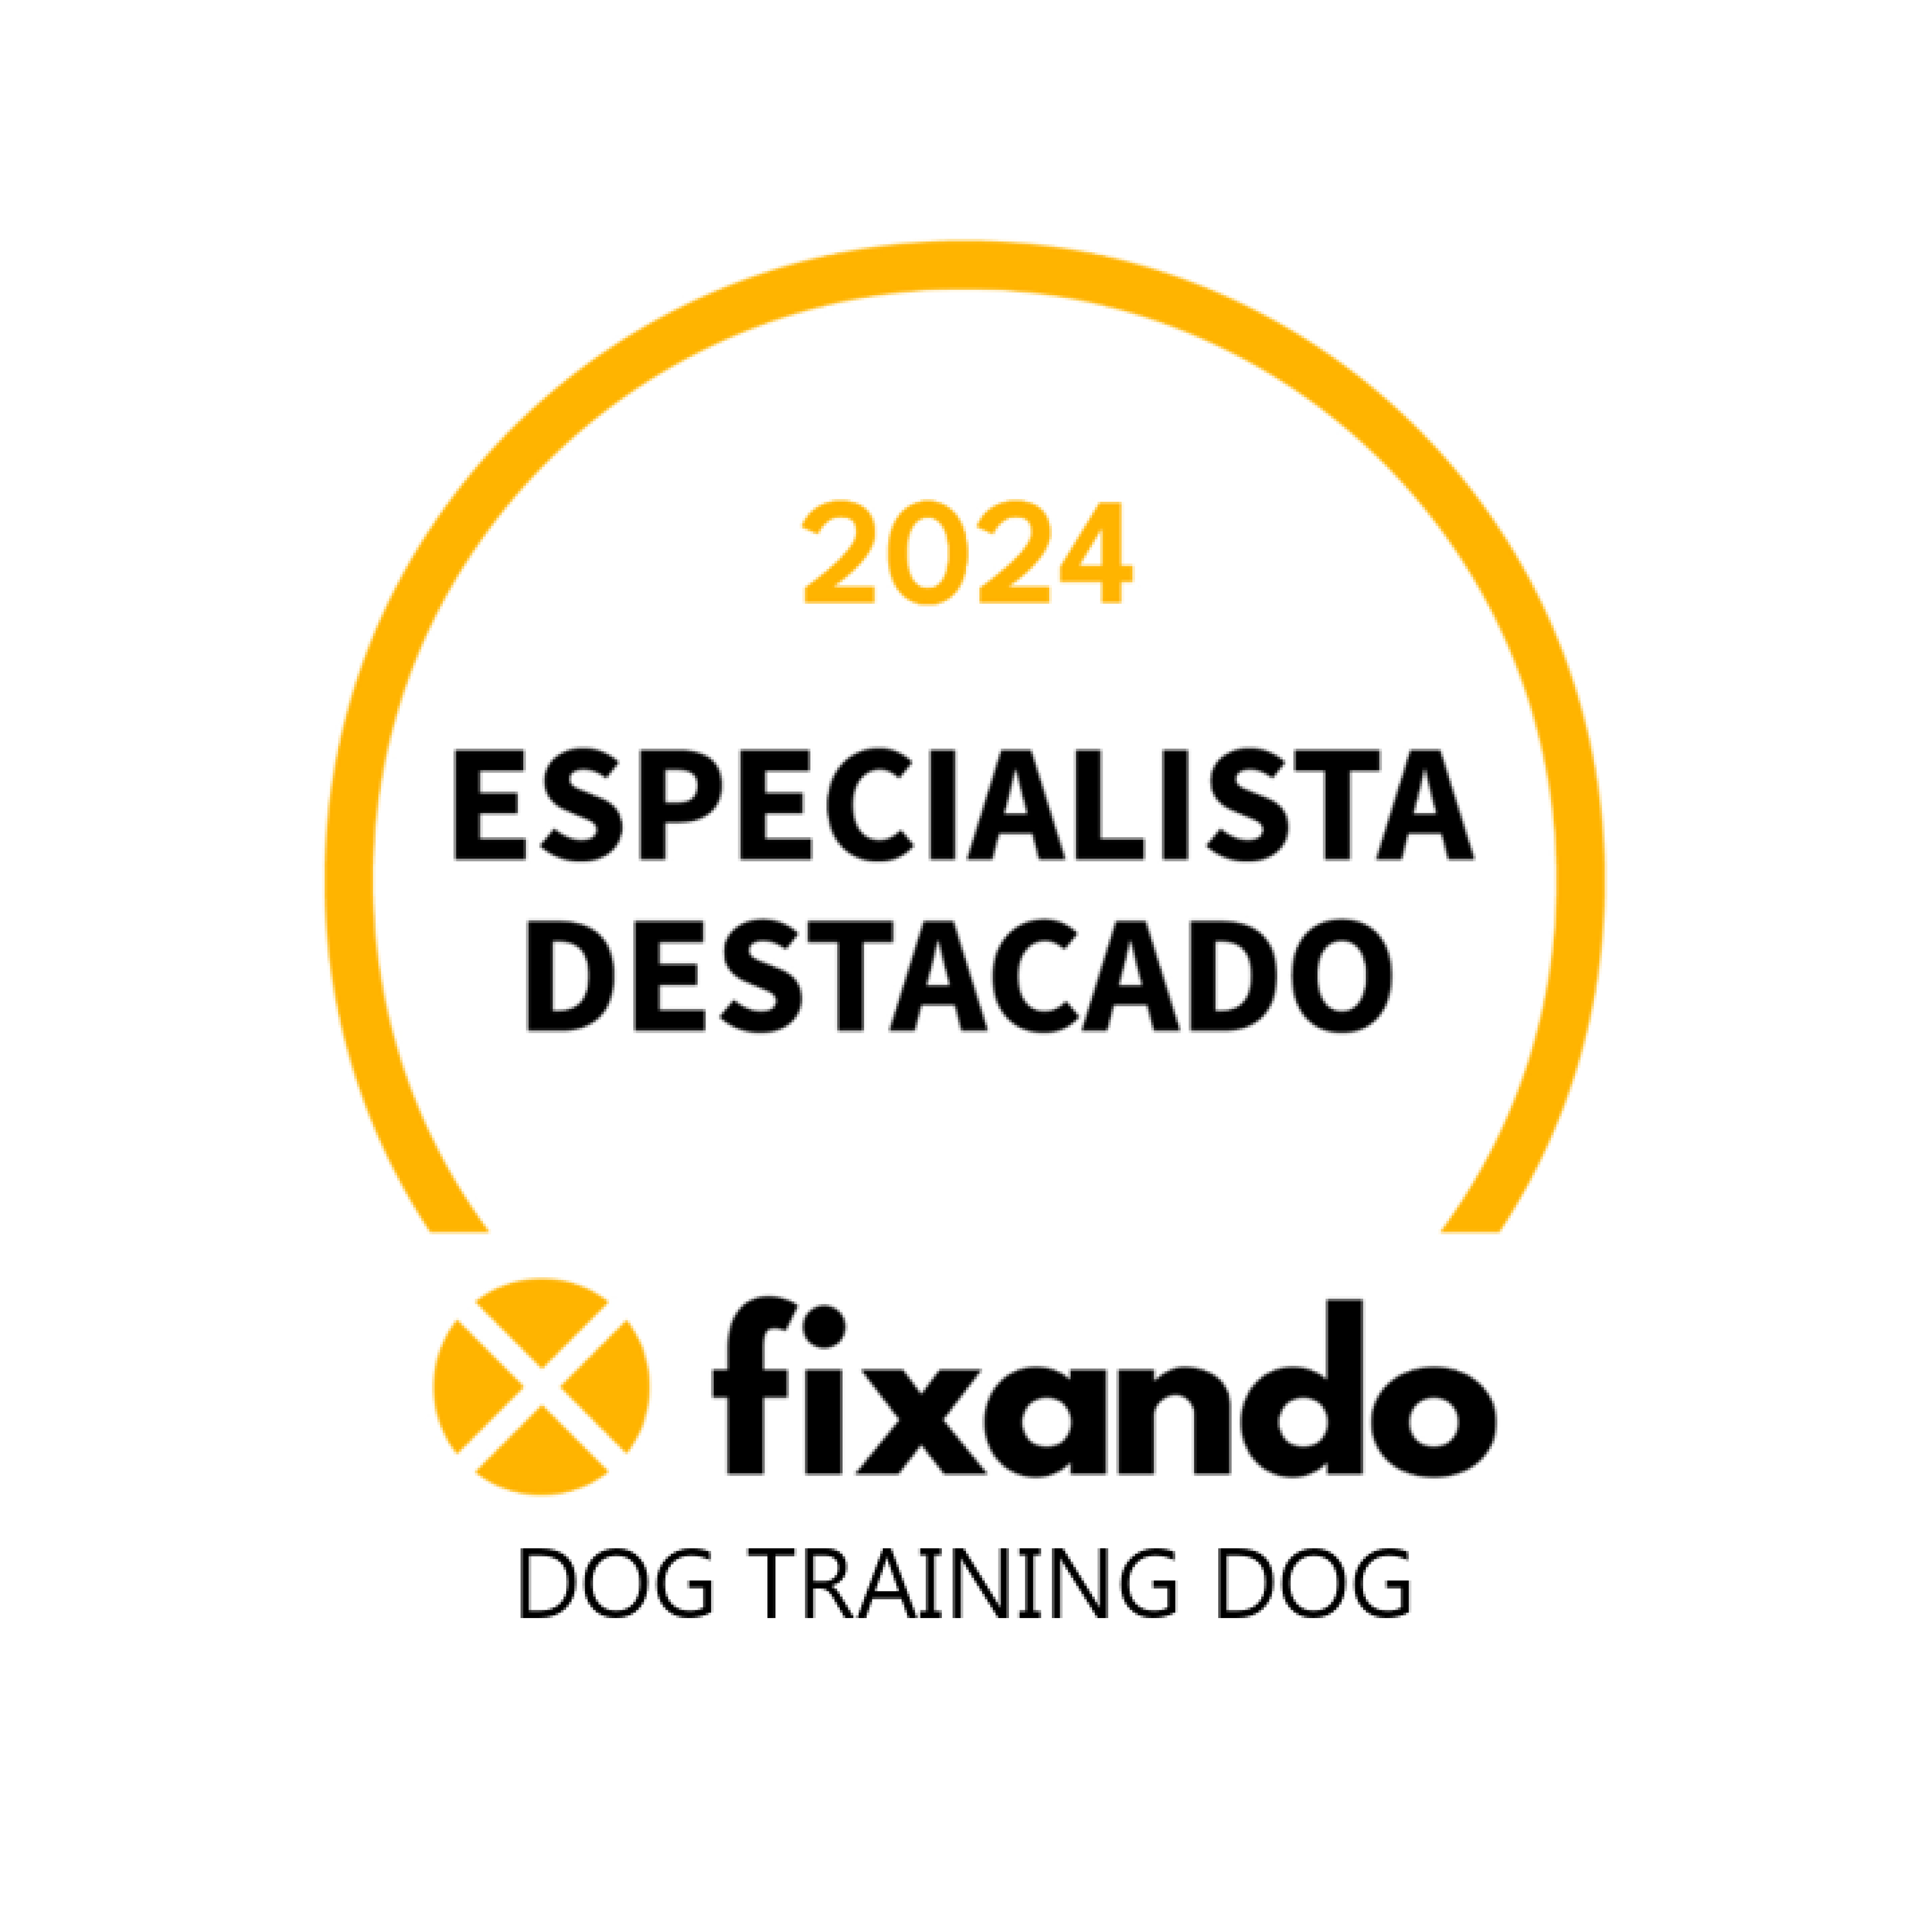 Dog Training Dog - Olhão - Dog Walking